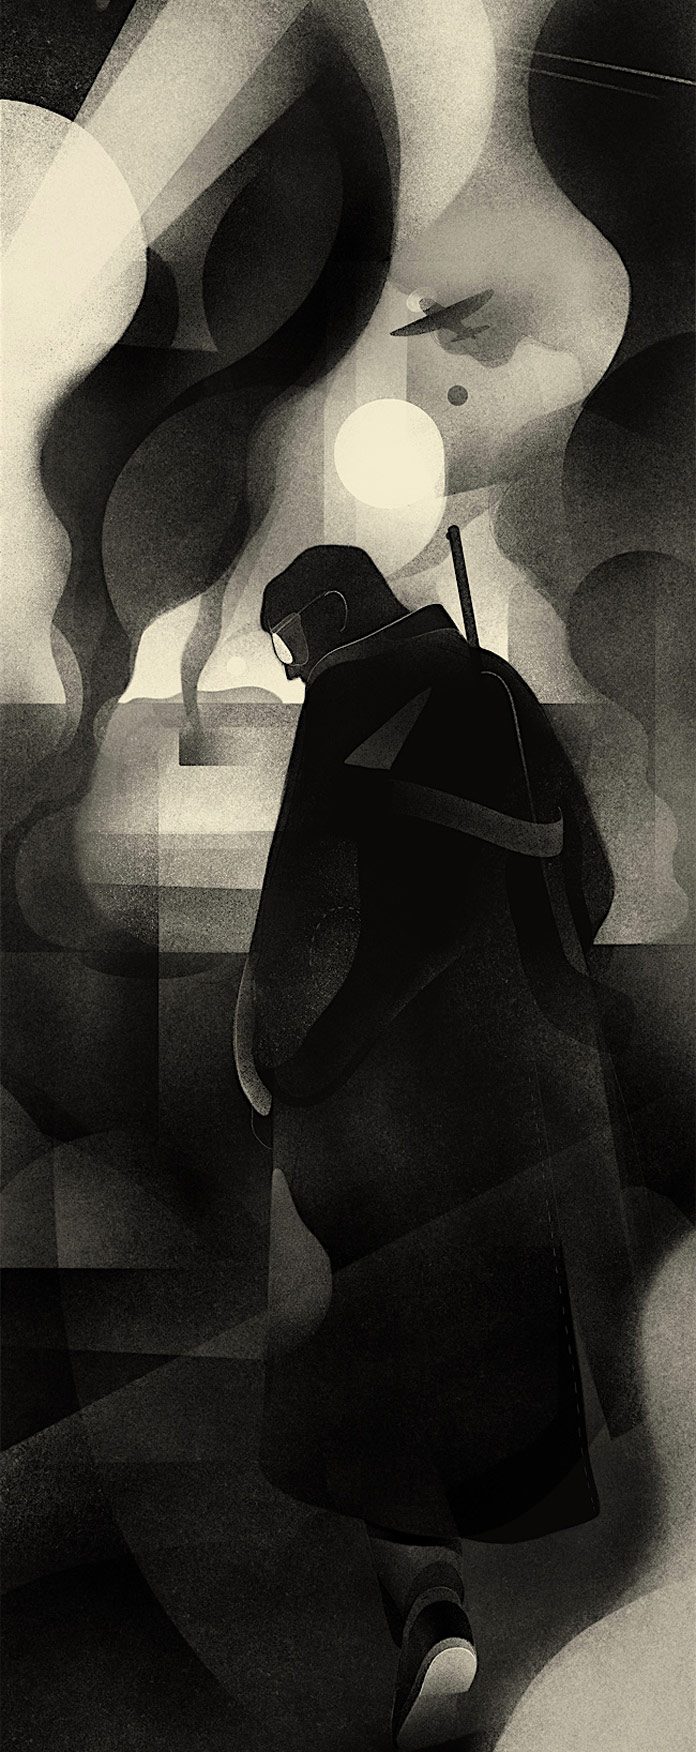 The Nightmare, an illustration by Karolis Strautniekas.